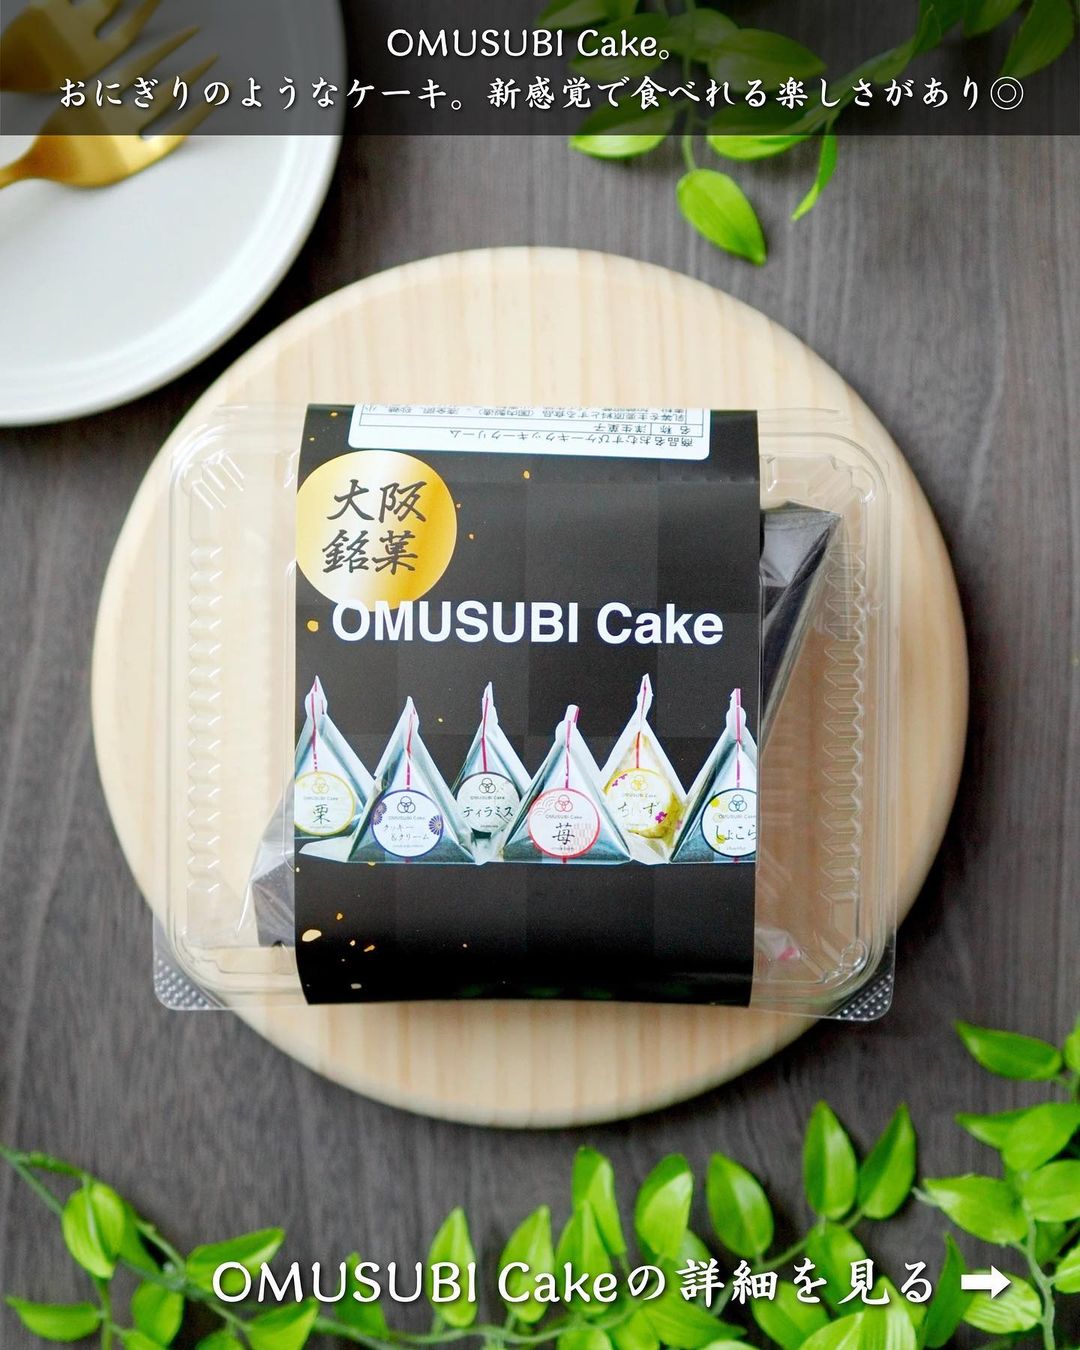 【十和田市・ご当地グルメセレクション】OMUSUBI Cake